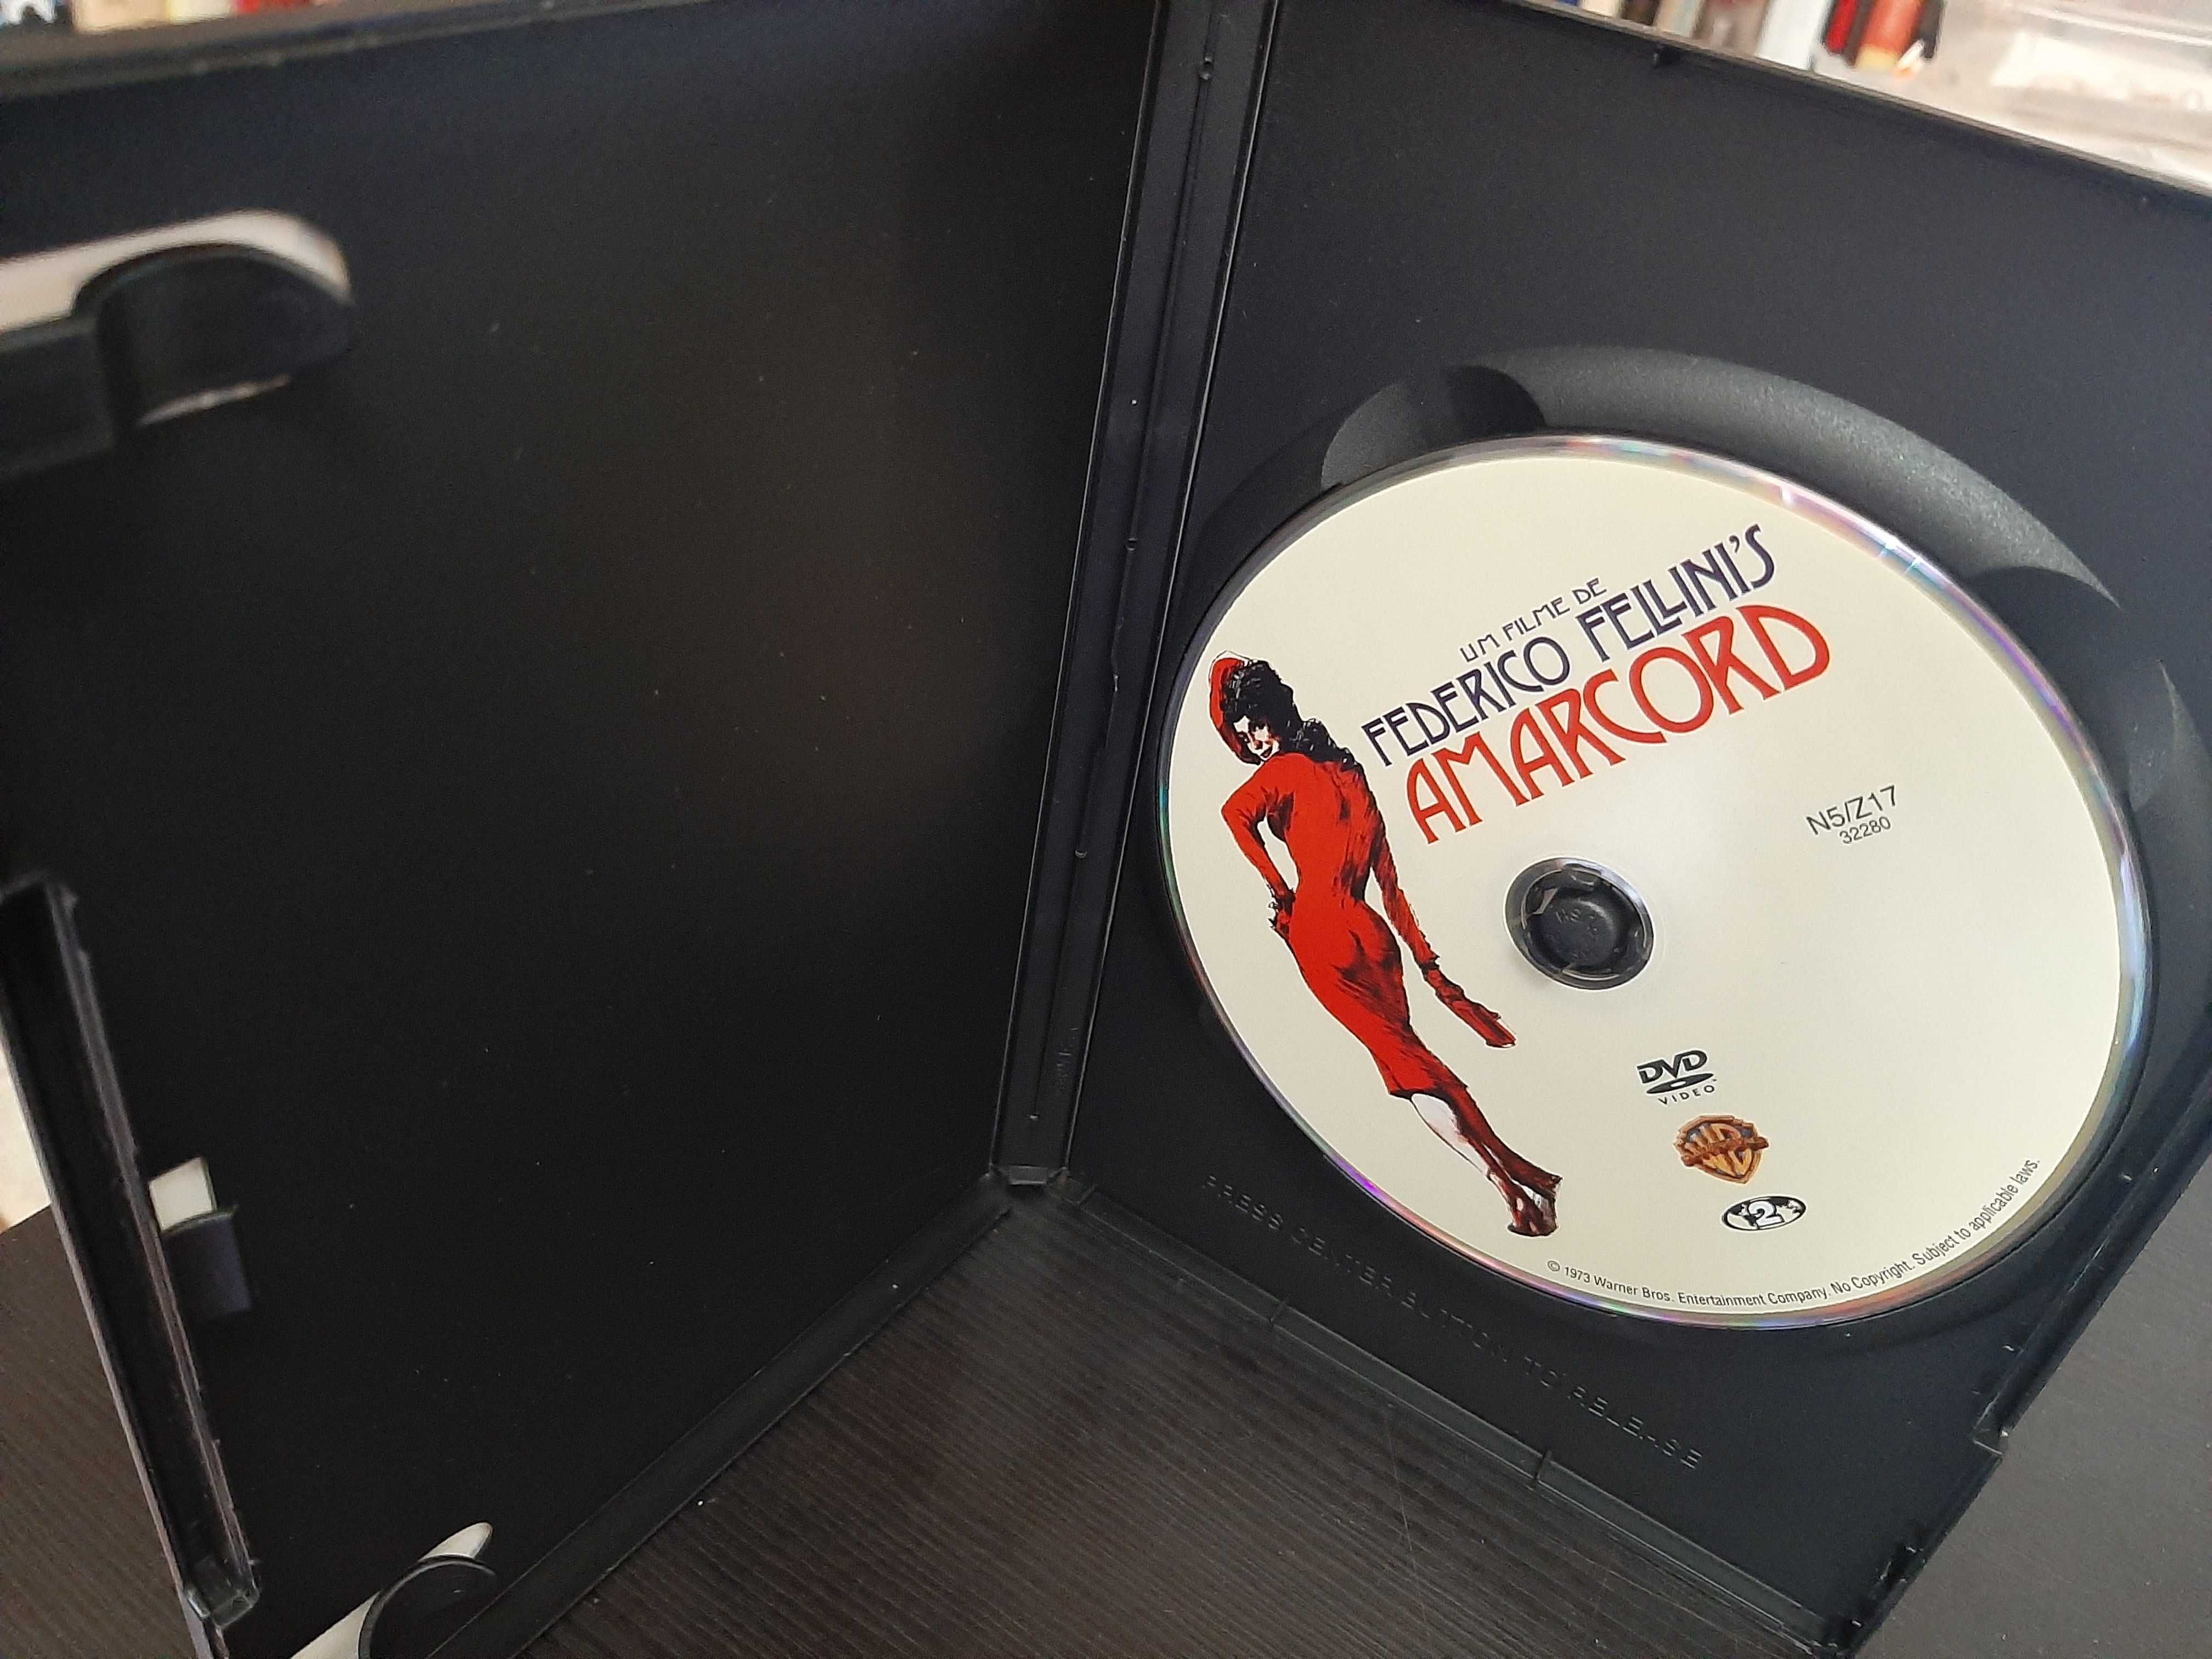 Amarcord - Federico Fellini